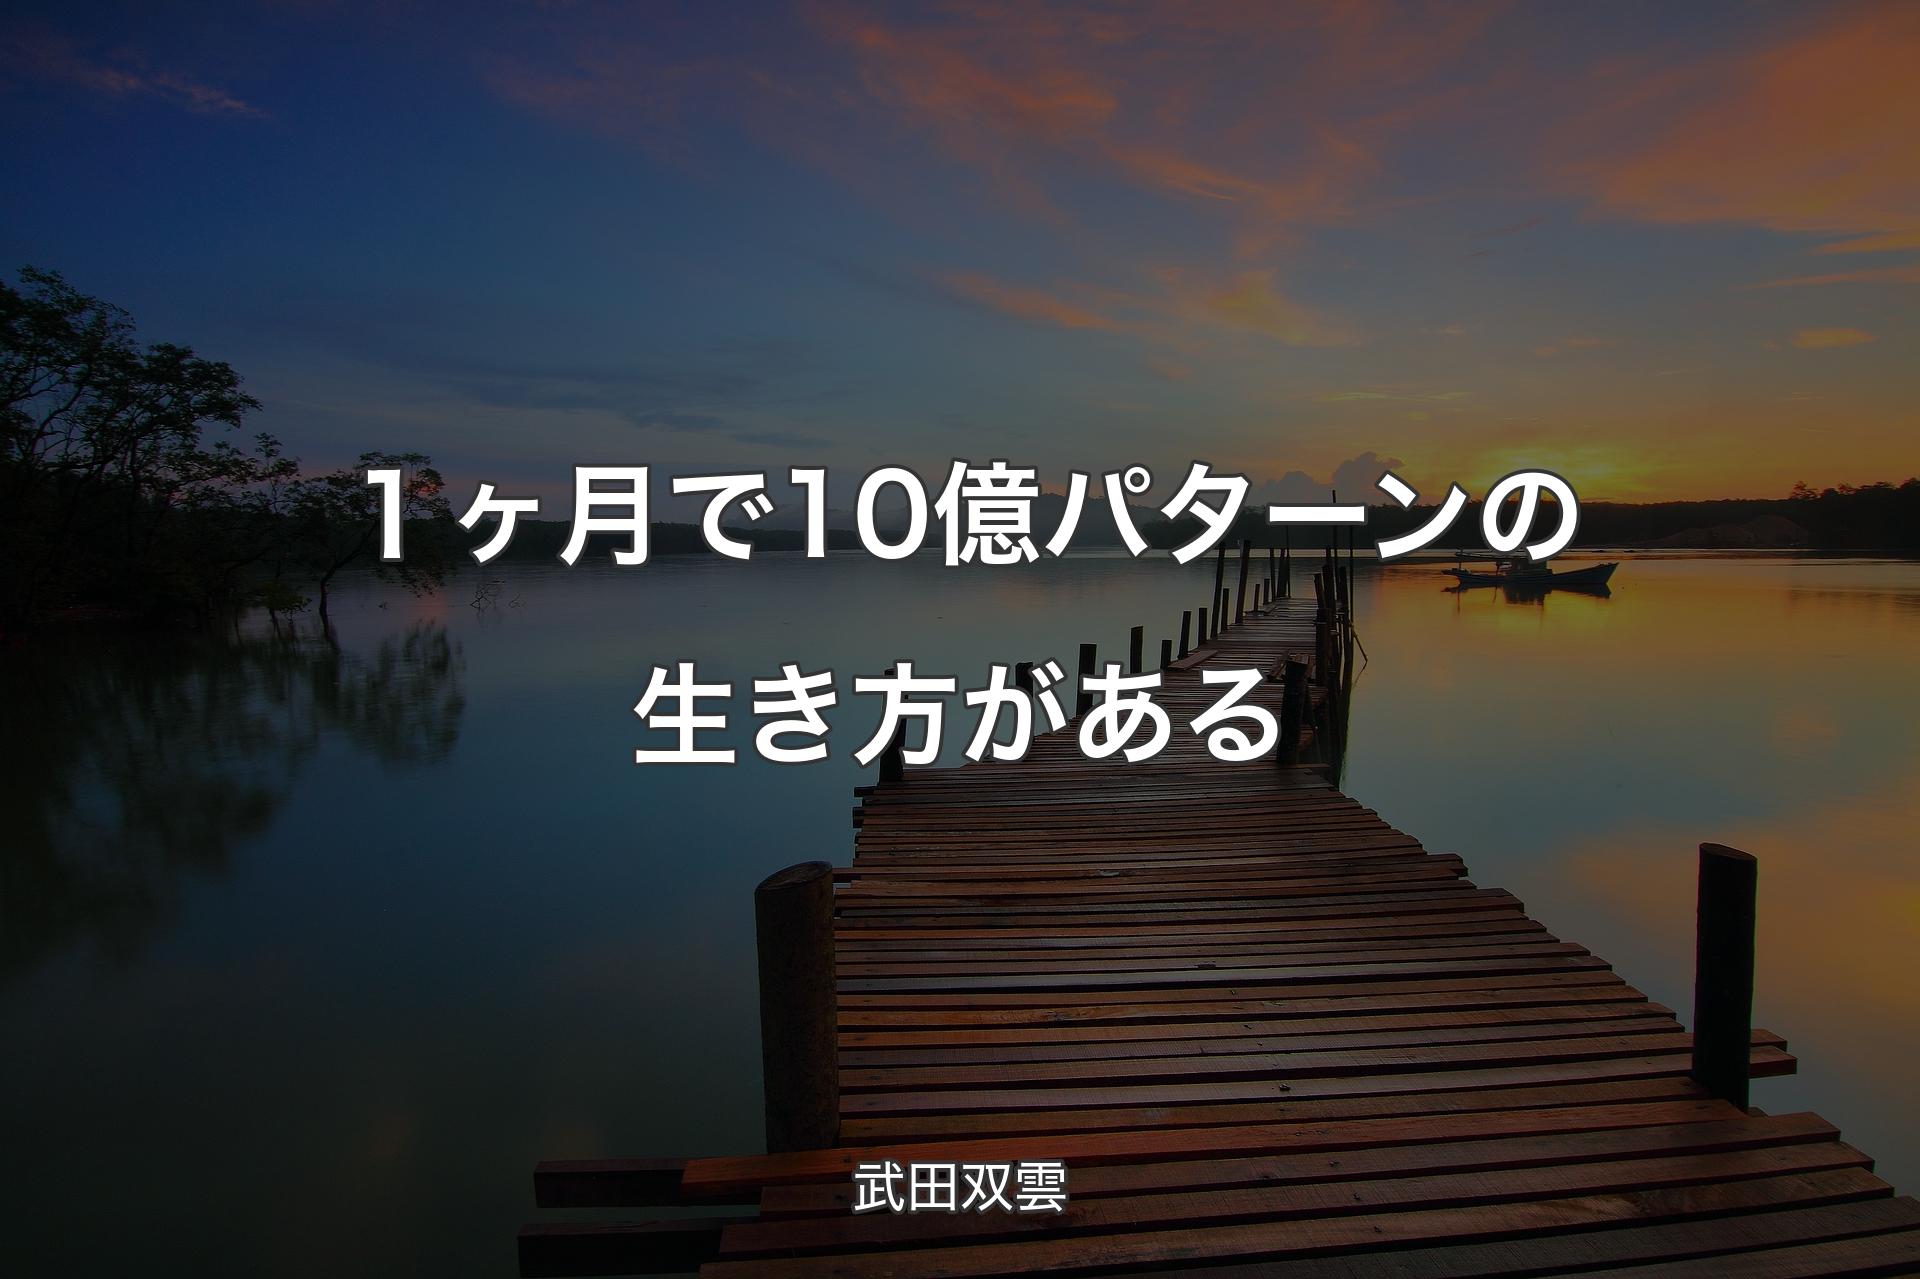 【背景3】１ヶ月で10億パターンの生き方がある - 武田双雲